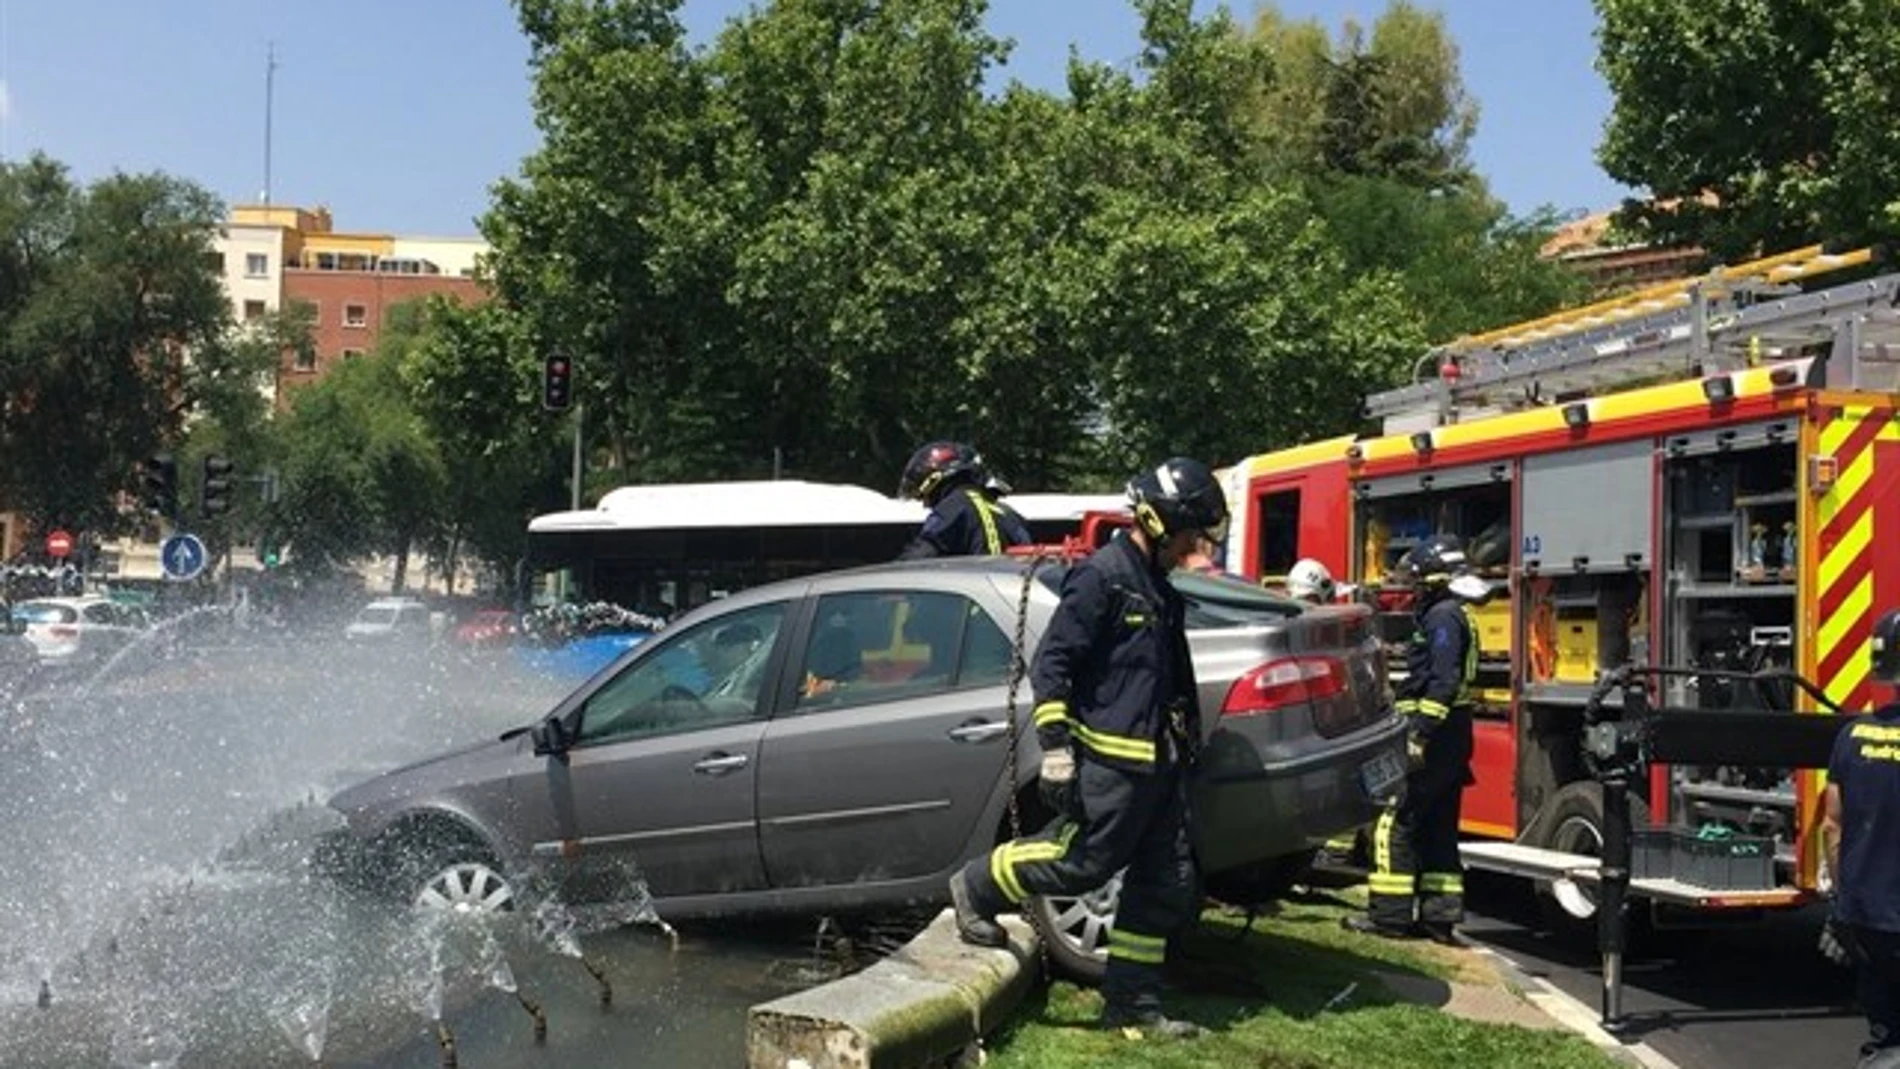 Pierde el control y empotra su coche contra una fuente en el centro de Madrid